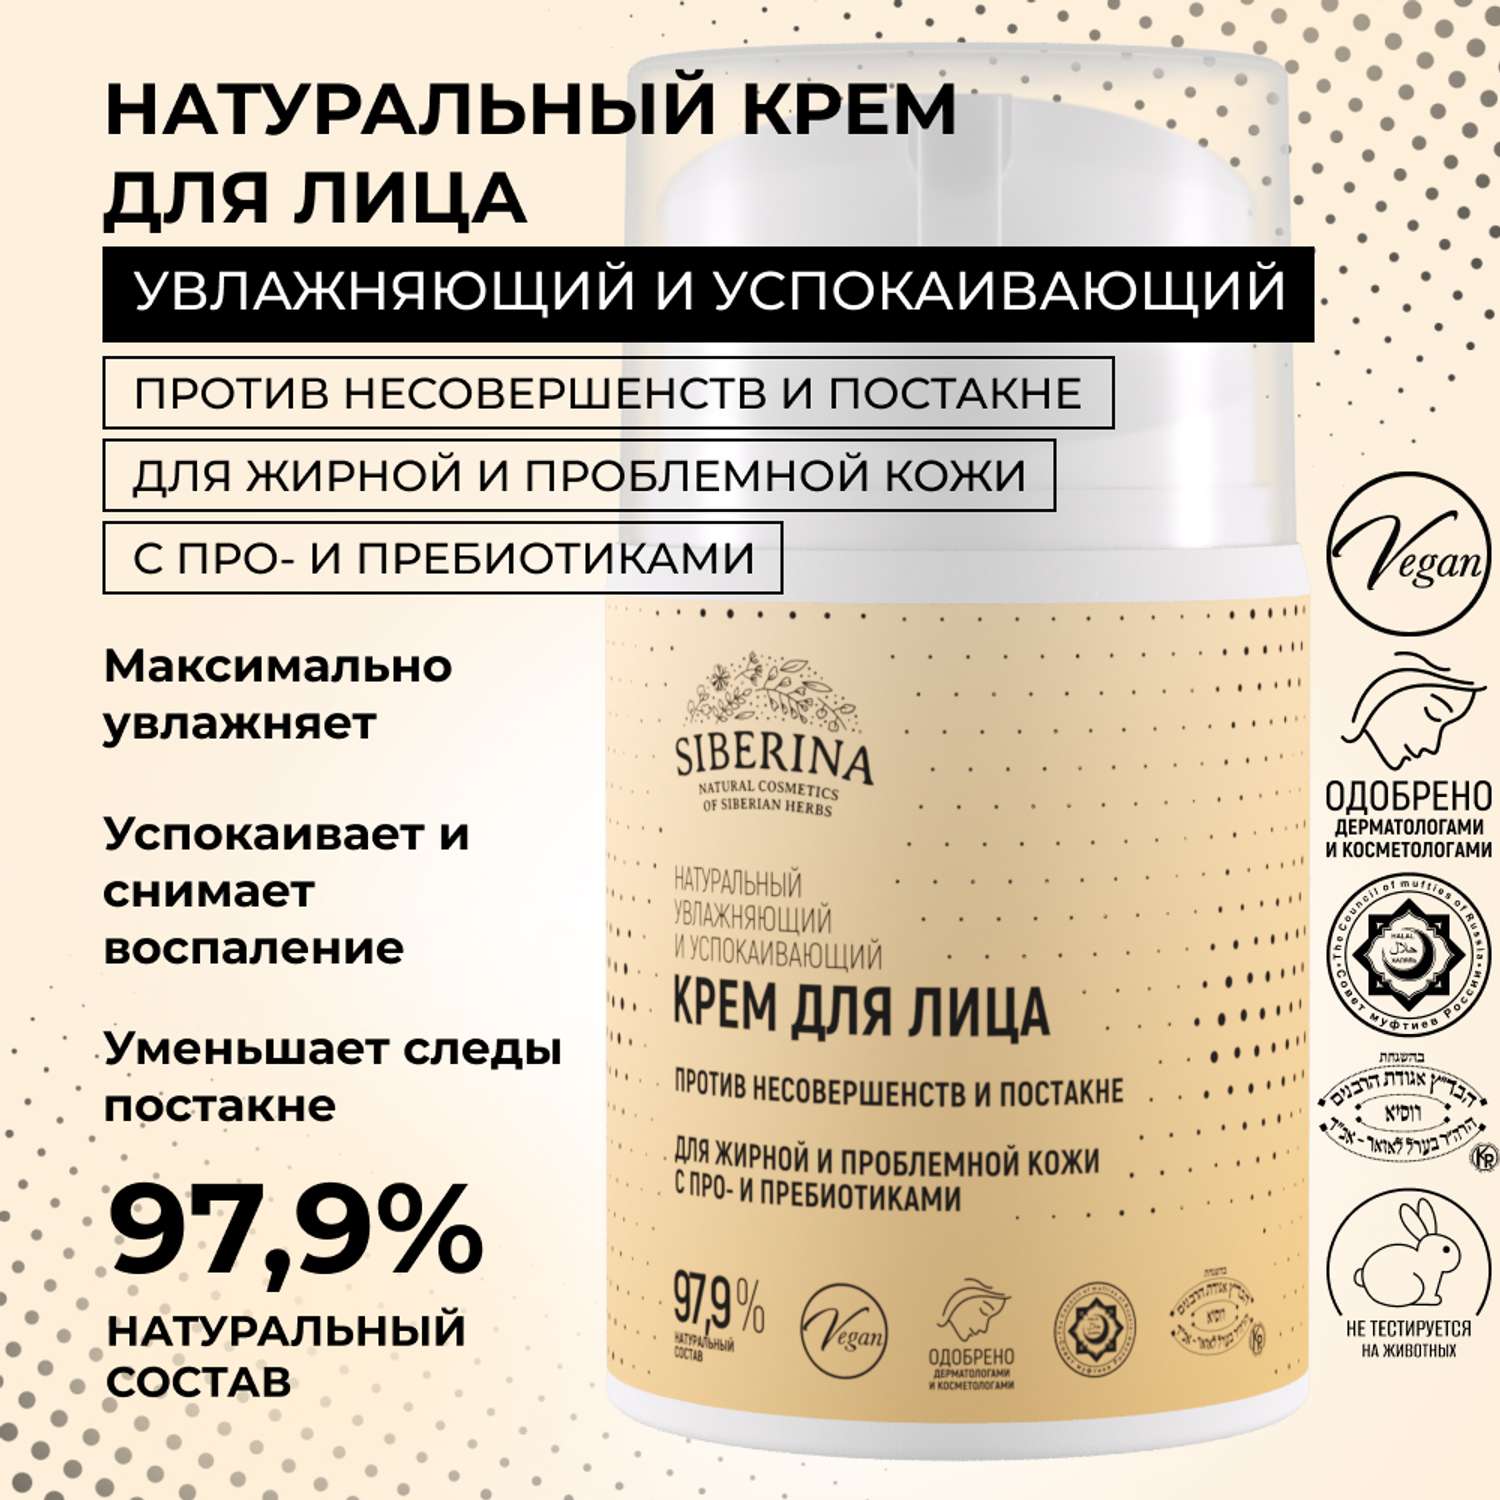 Крем для лица Siberina натуральный «Против несовершенств и постакне» для жирной и проблемной кожи 50 мл - фото 2